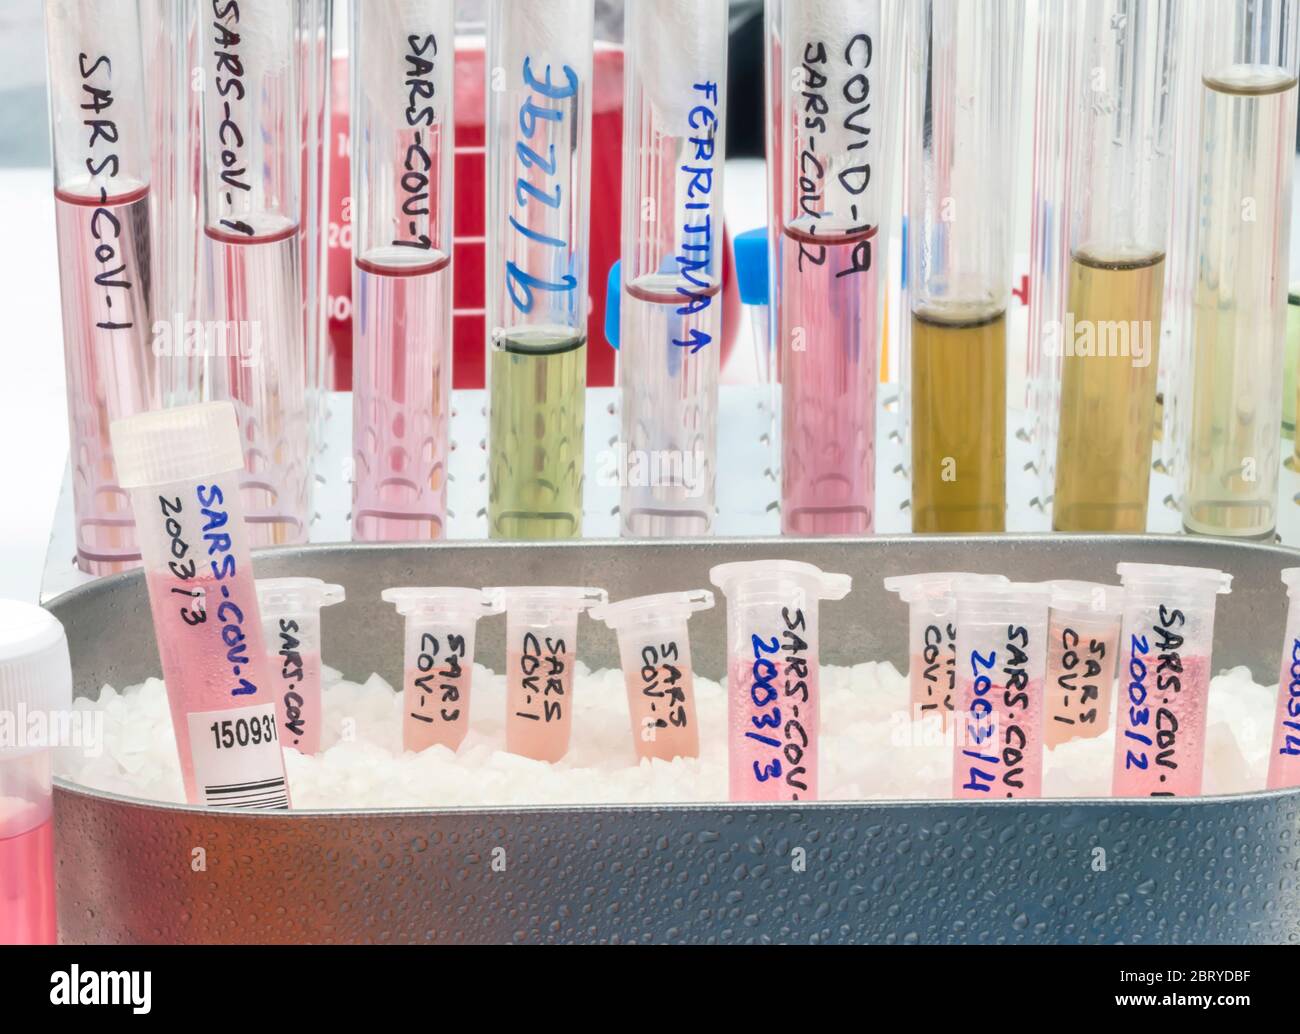 Fiale con campioni di SARS-COV-1 preparati a freddo in uno studio epiedomologico di laboratorio su SARS-COV-2 Covid-19, immagine concettuale Foto Stock